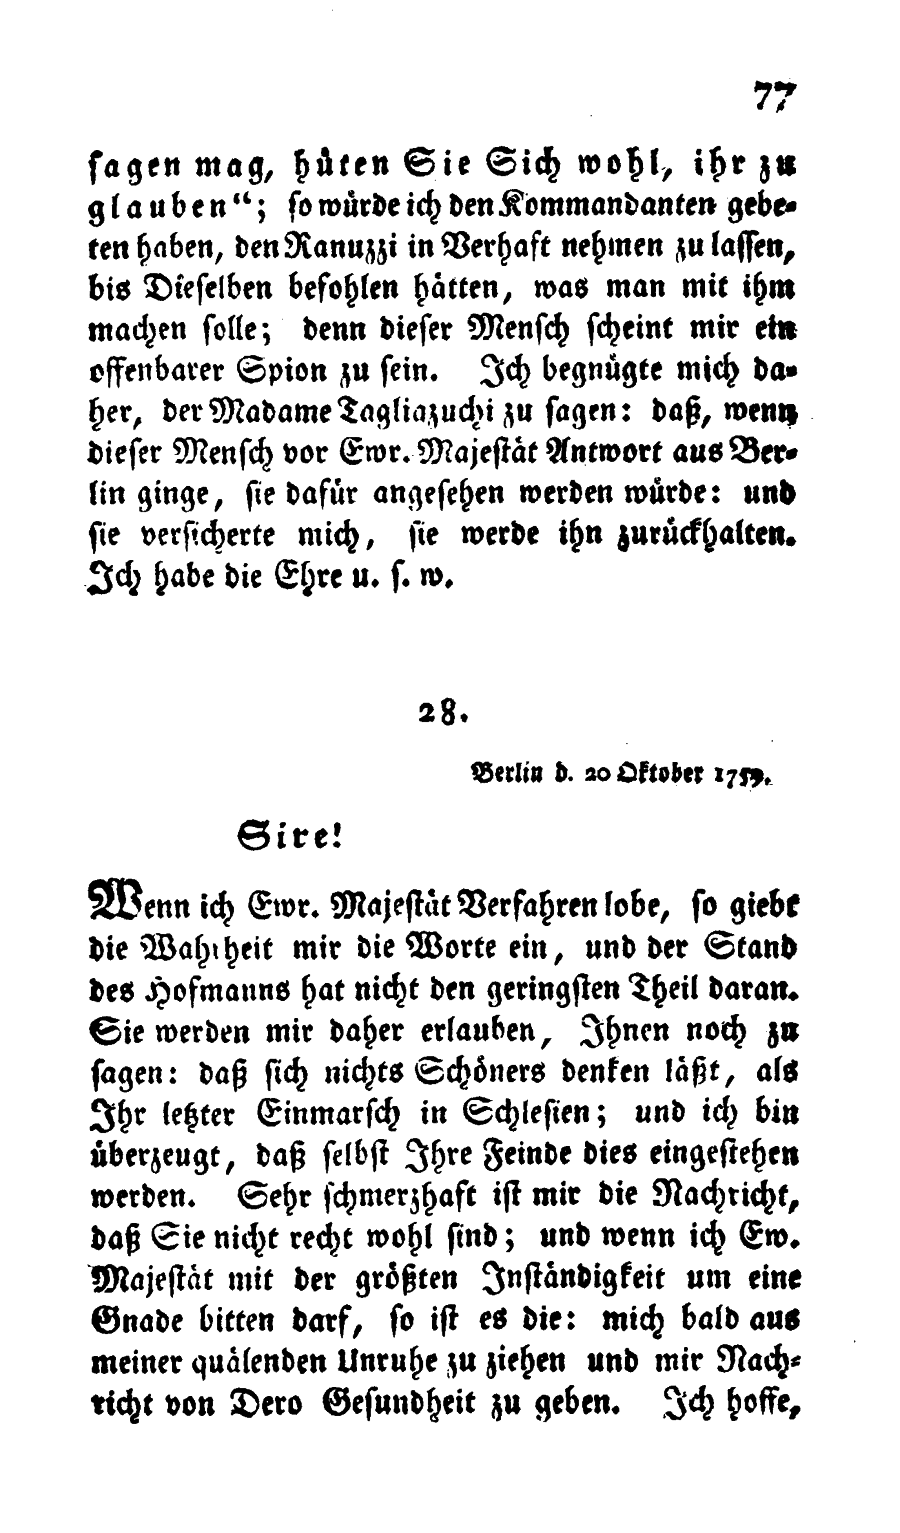 S. 77, Obj. 2